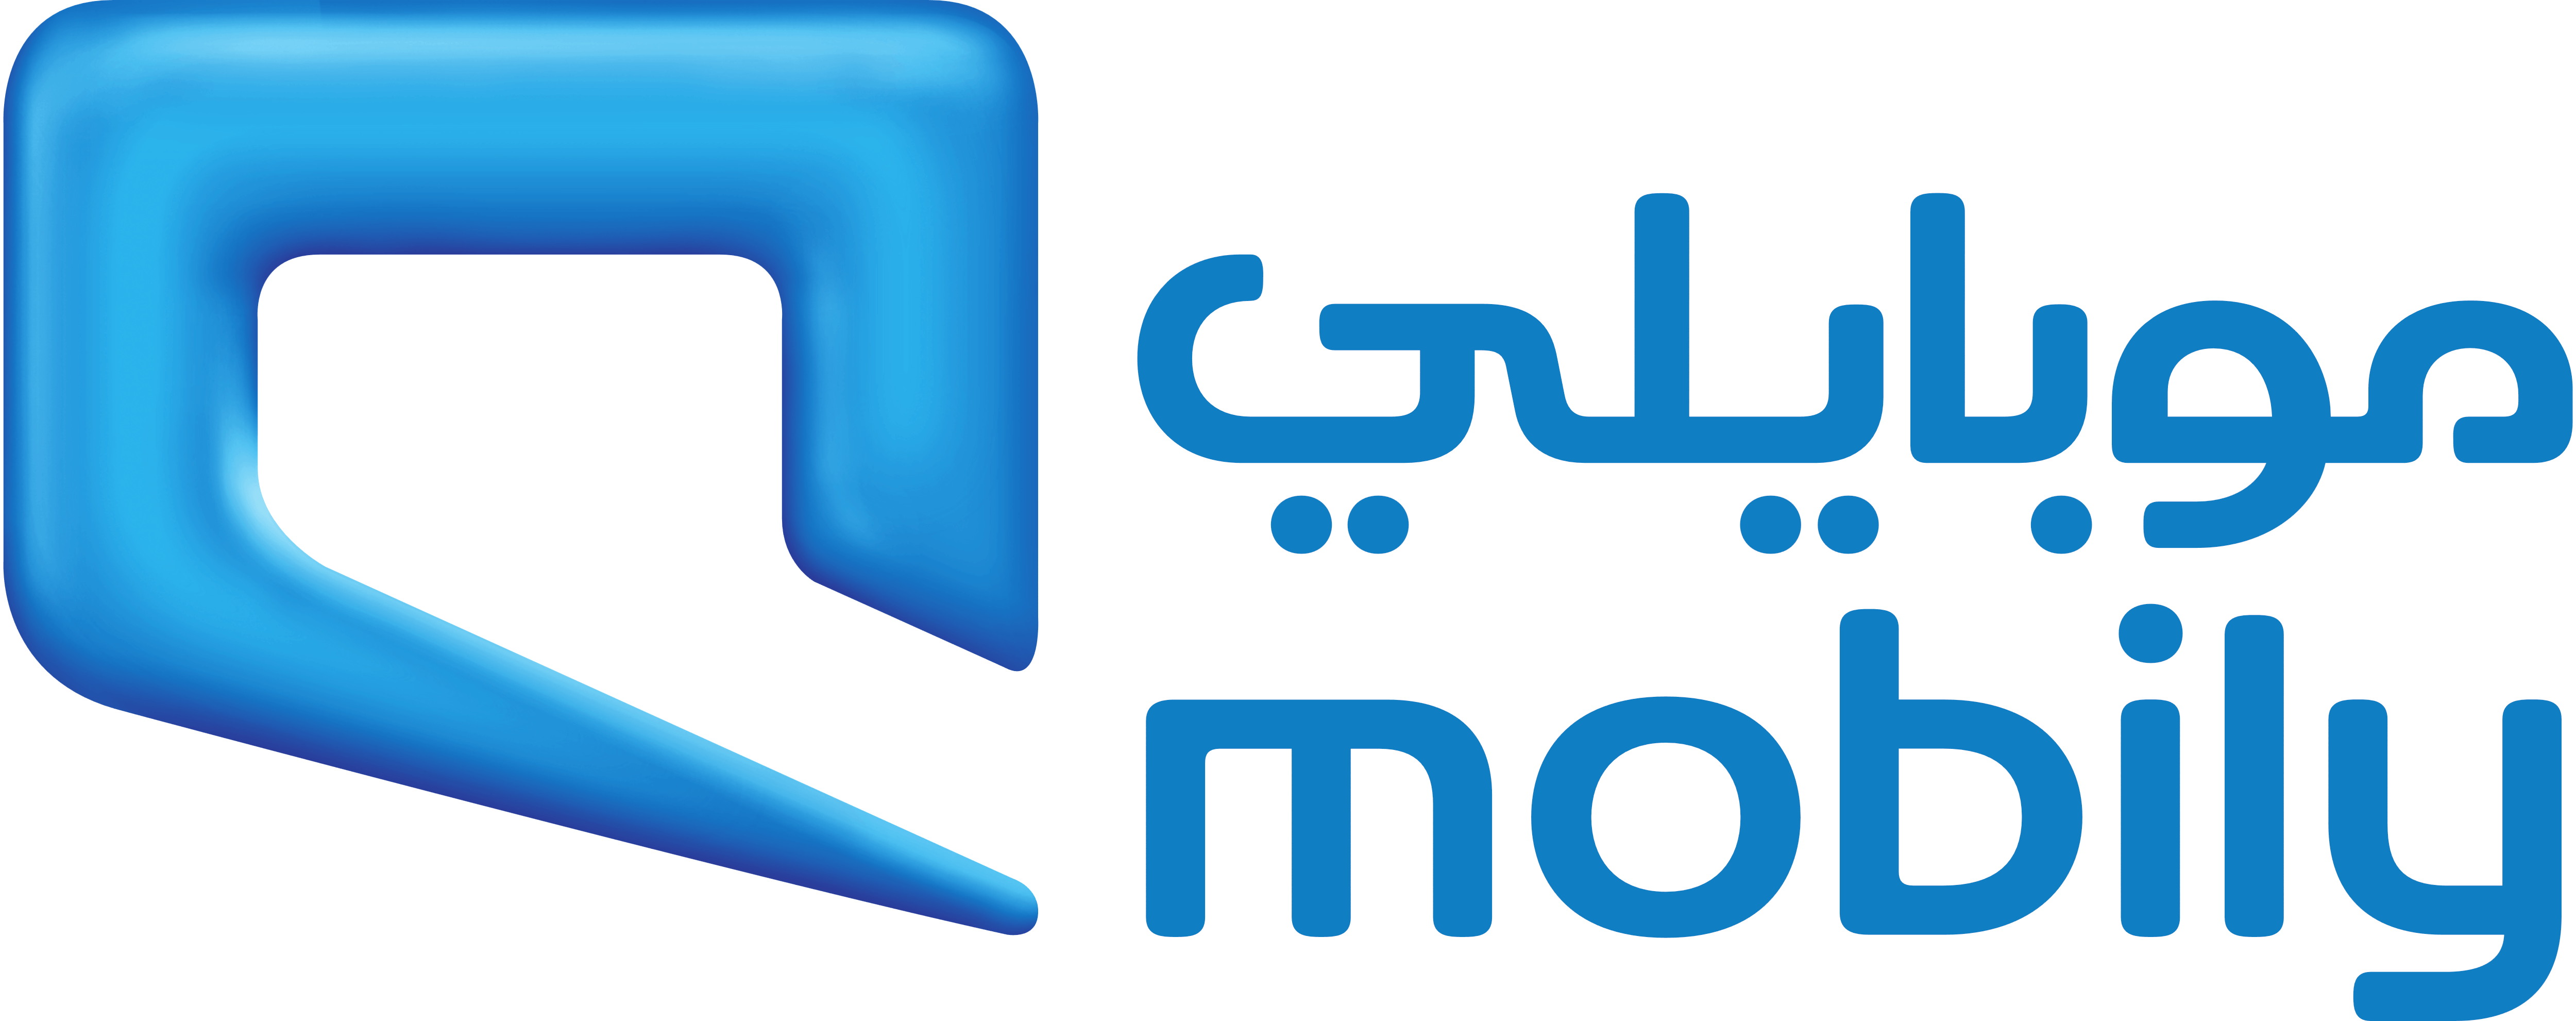 Mobily Logo - Mobily – Logos Download